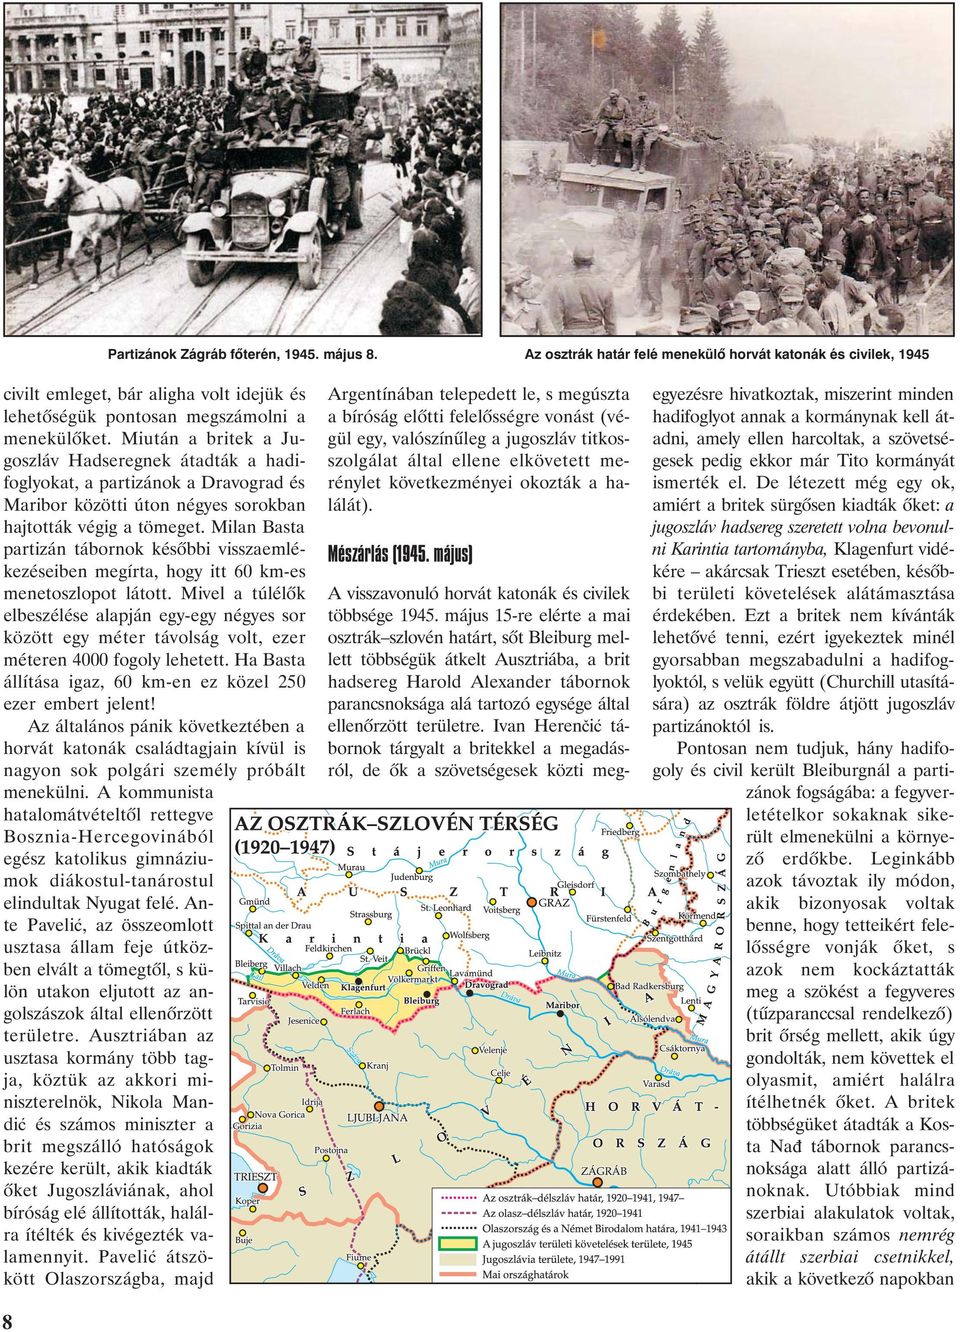 Milan Basta partizán tábornok késõbbi visszaemlékezéseiben megírta, hogy itt 60 km-es menetoszlopot látott.